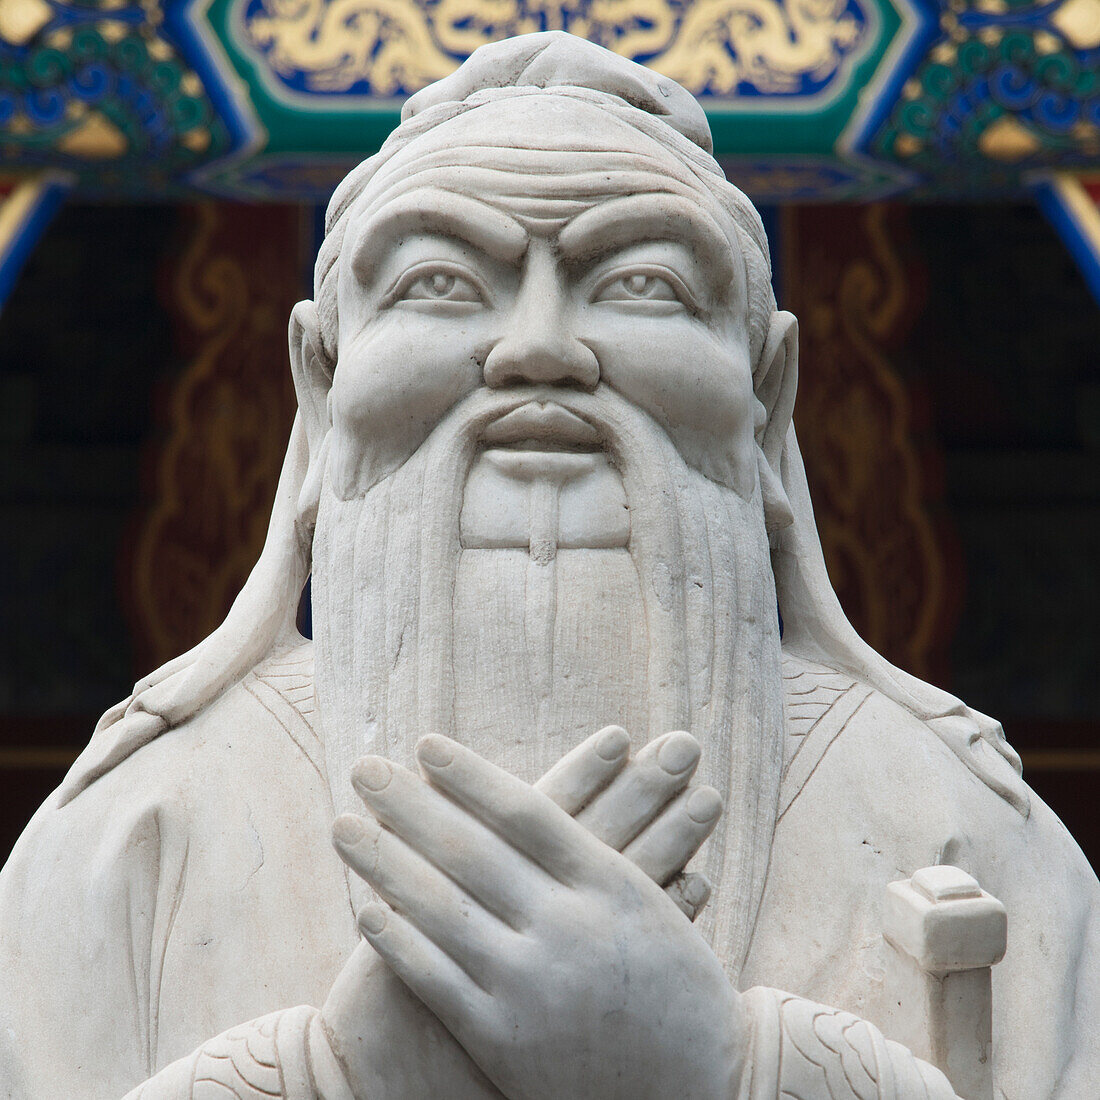 Statue Of Confucius At Confucius Temple; Beijing, China